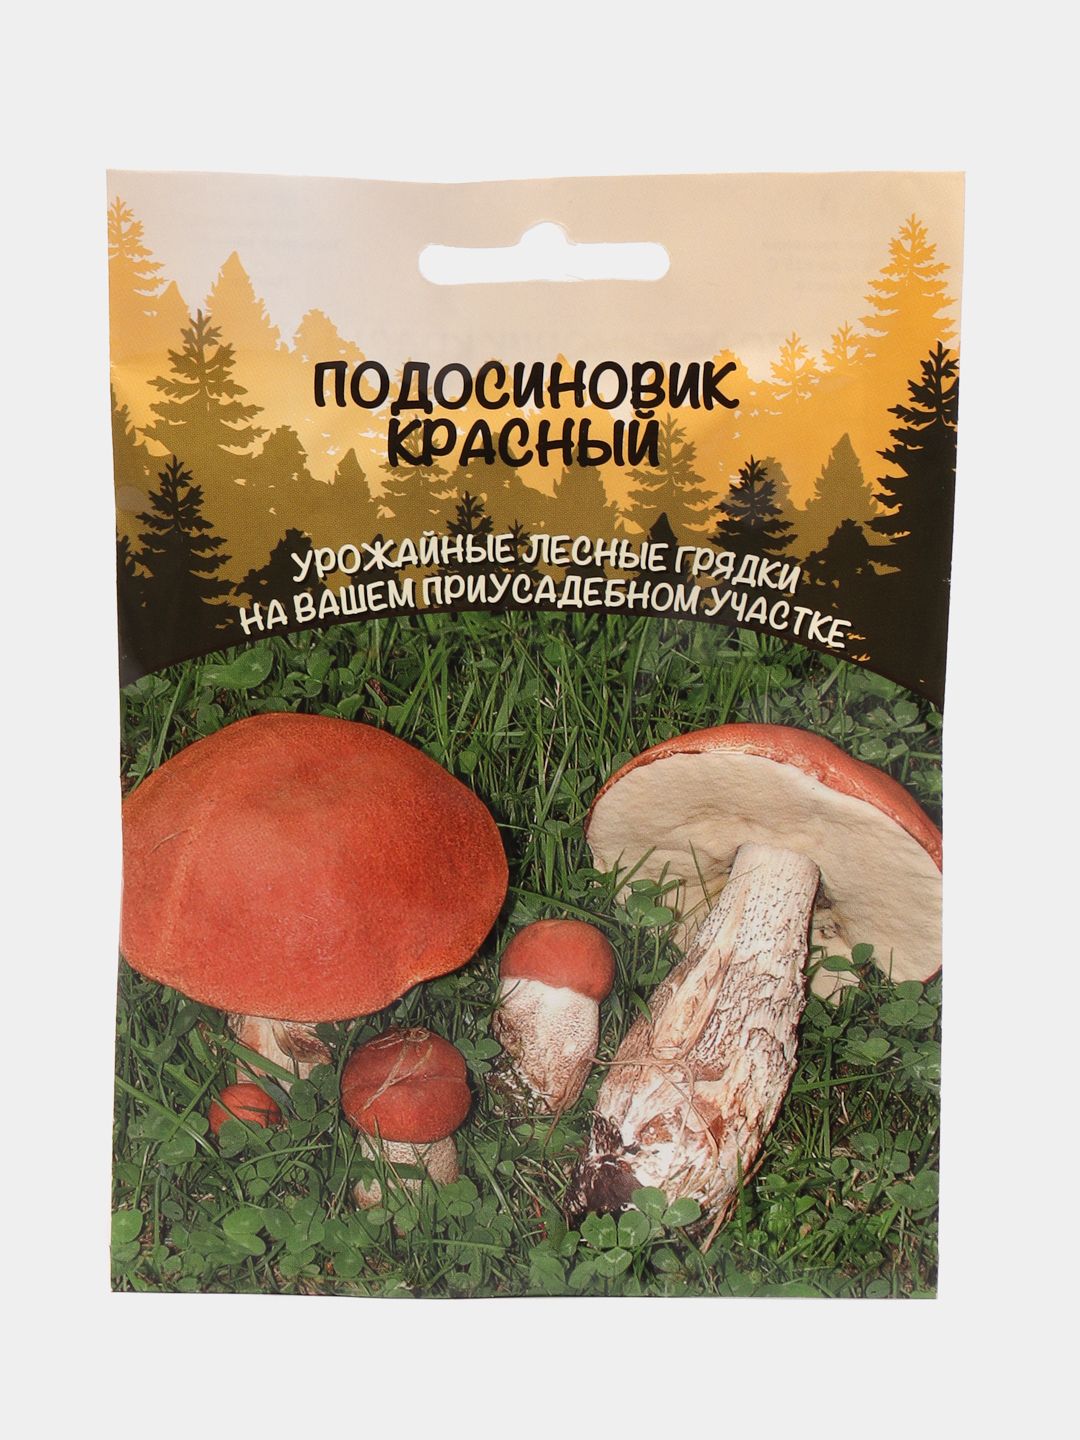 Мицелий грибов подосиновик красный